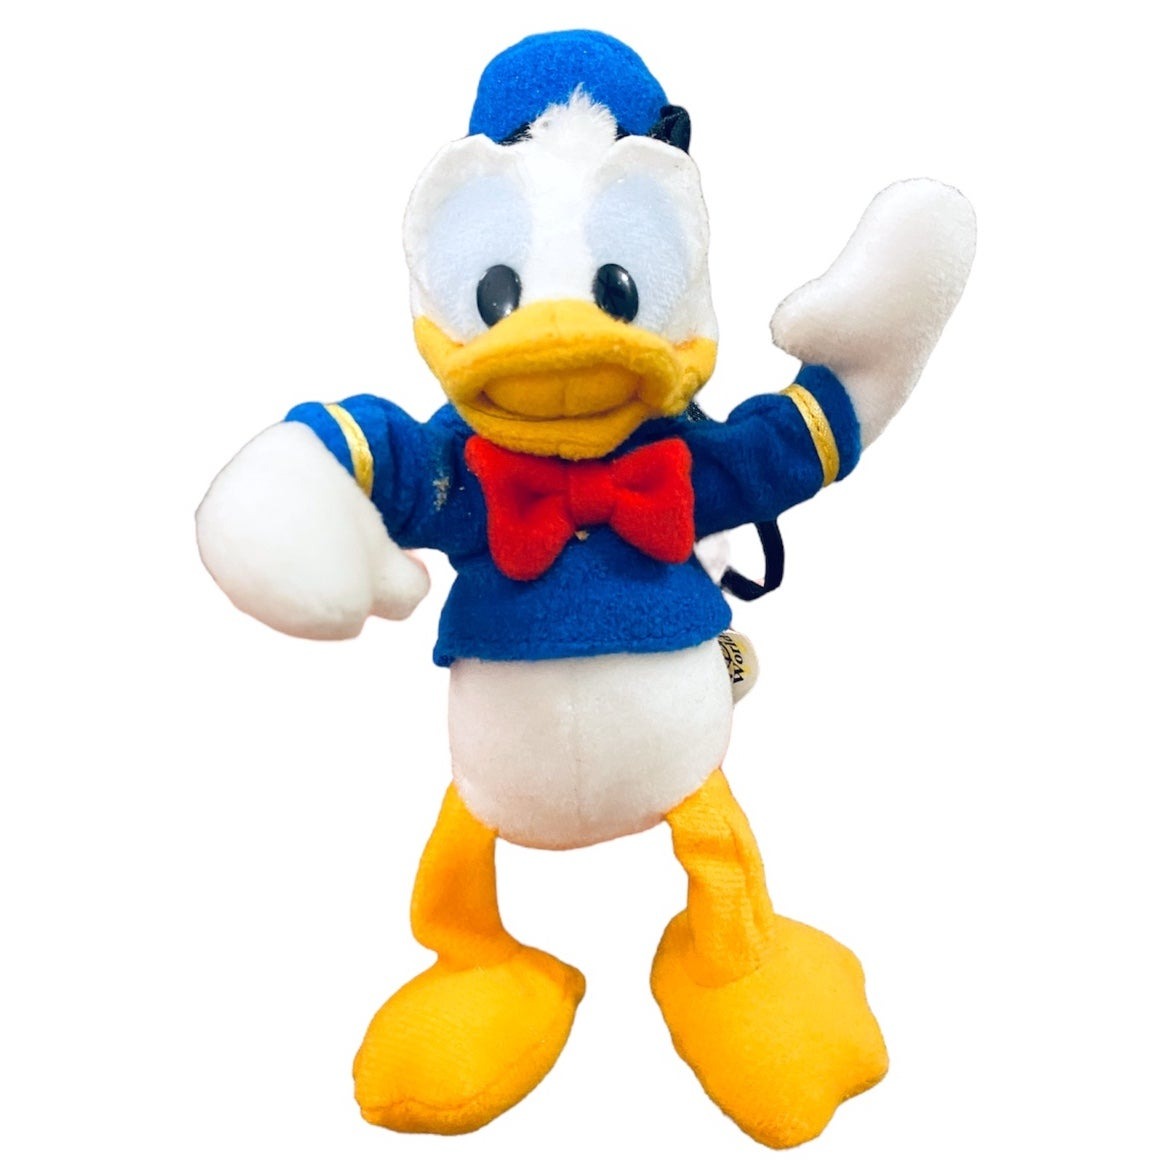 Disney World Daffy Duck Christmas ornament